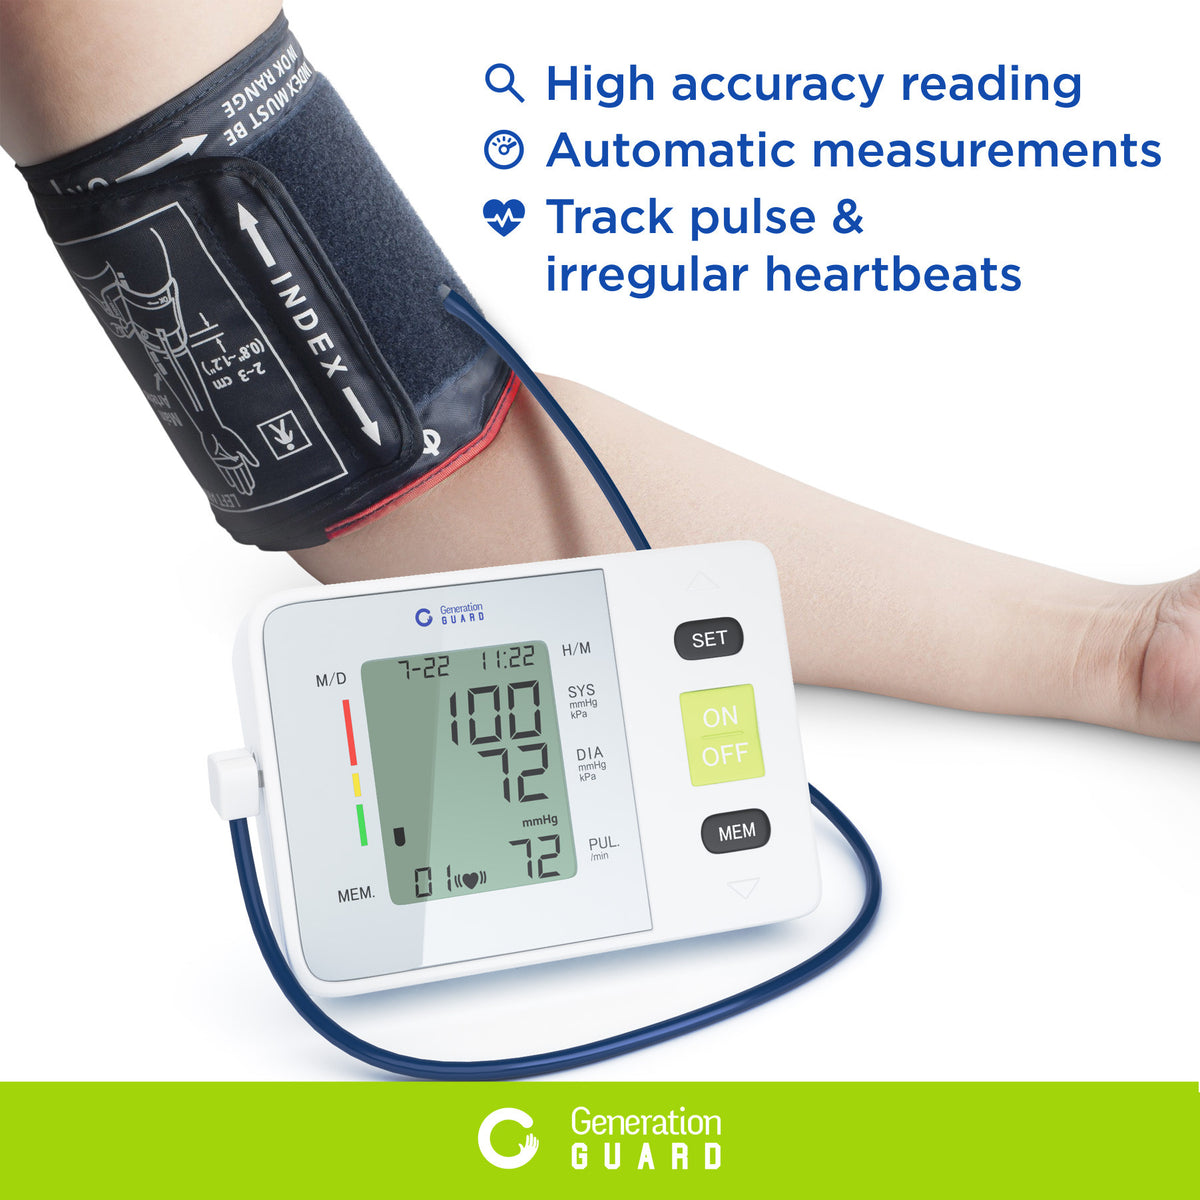 Prevention DS-400PV Semi-Automatic Blood Pressure Monitor